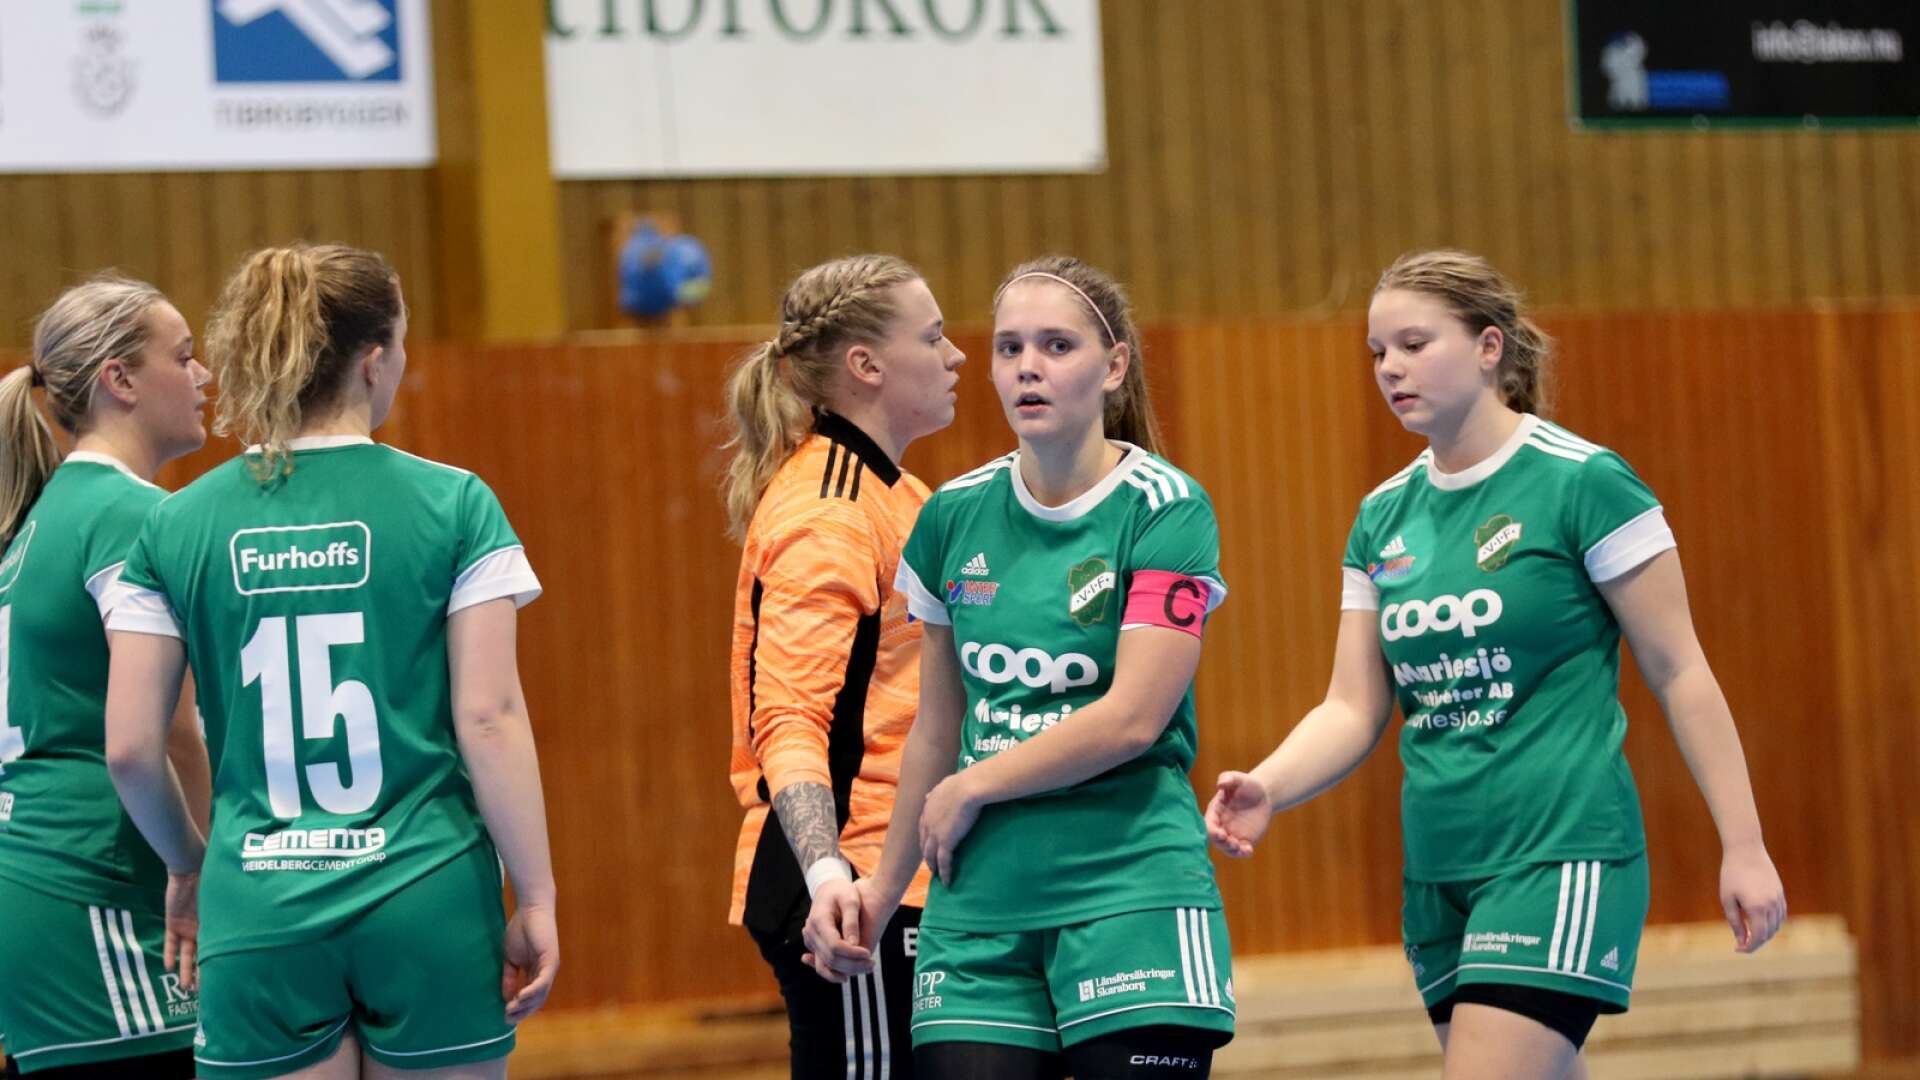 Götene FK slog Våmbs IF med 1–0 i finalen av Möbelcupen. Sofia Lindh och Våmb deppade efter förlusten men kunde totalt sett glädja sig åt en lyckad turnering där laget endast förlorade en match.